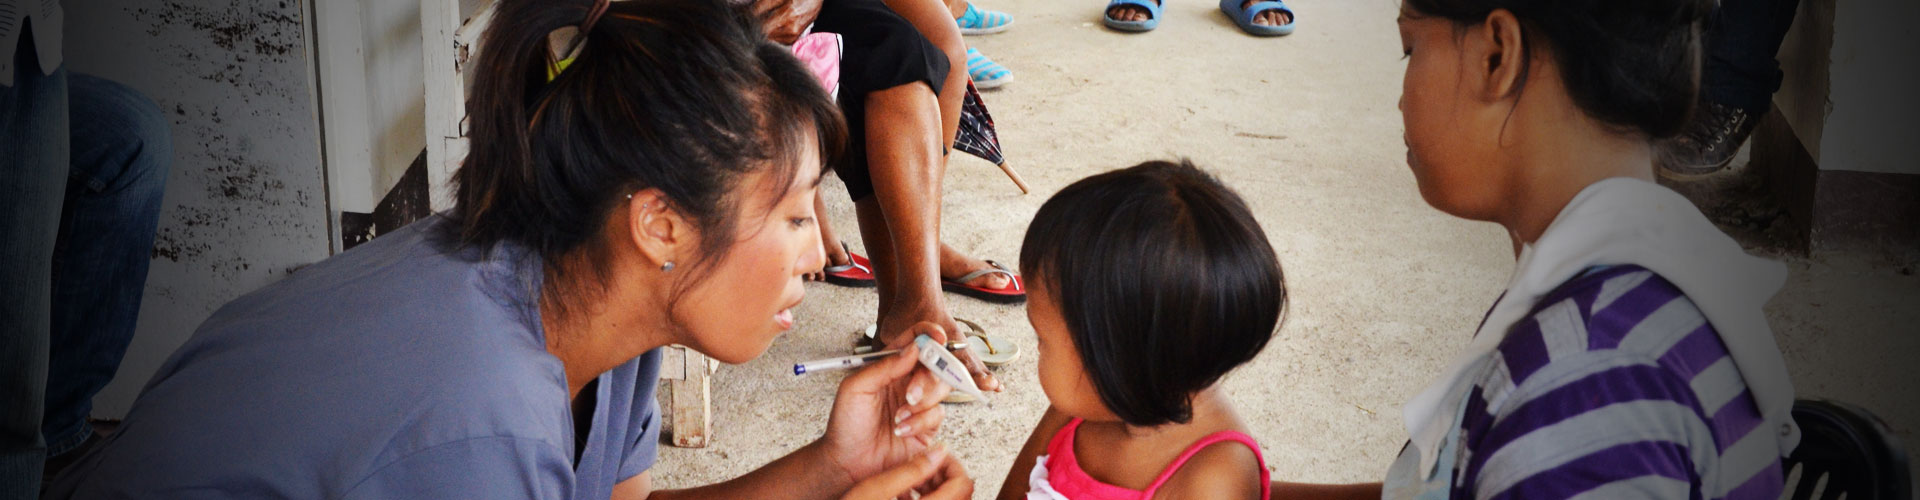 Programma di volontariato per l'infanzia nelle Filippine